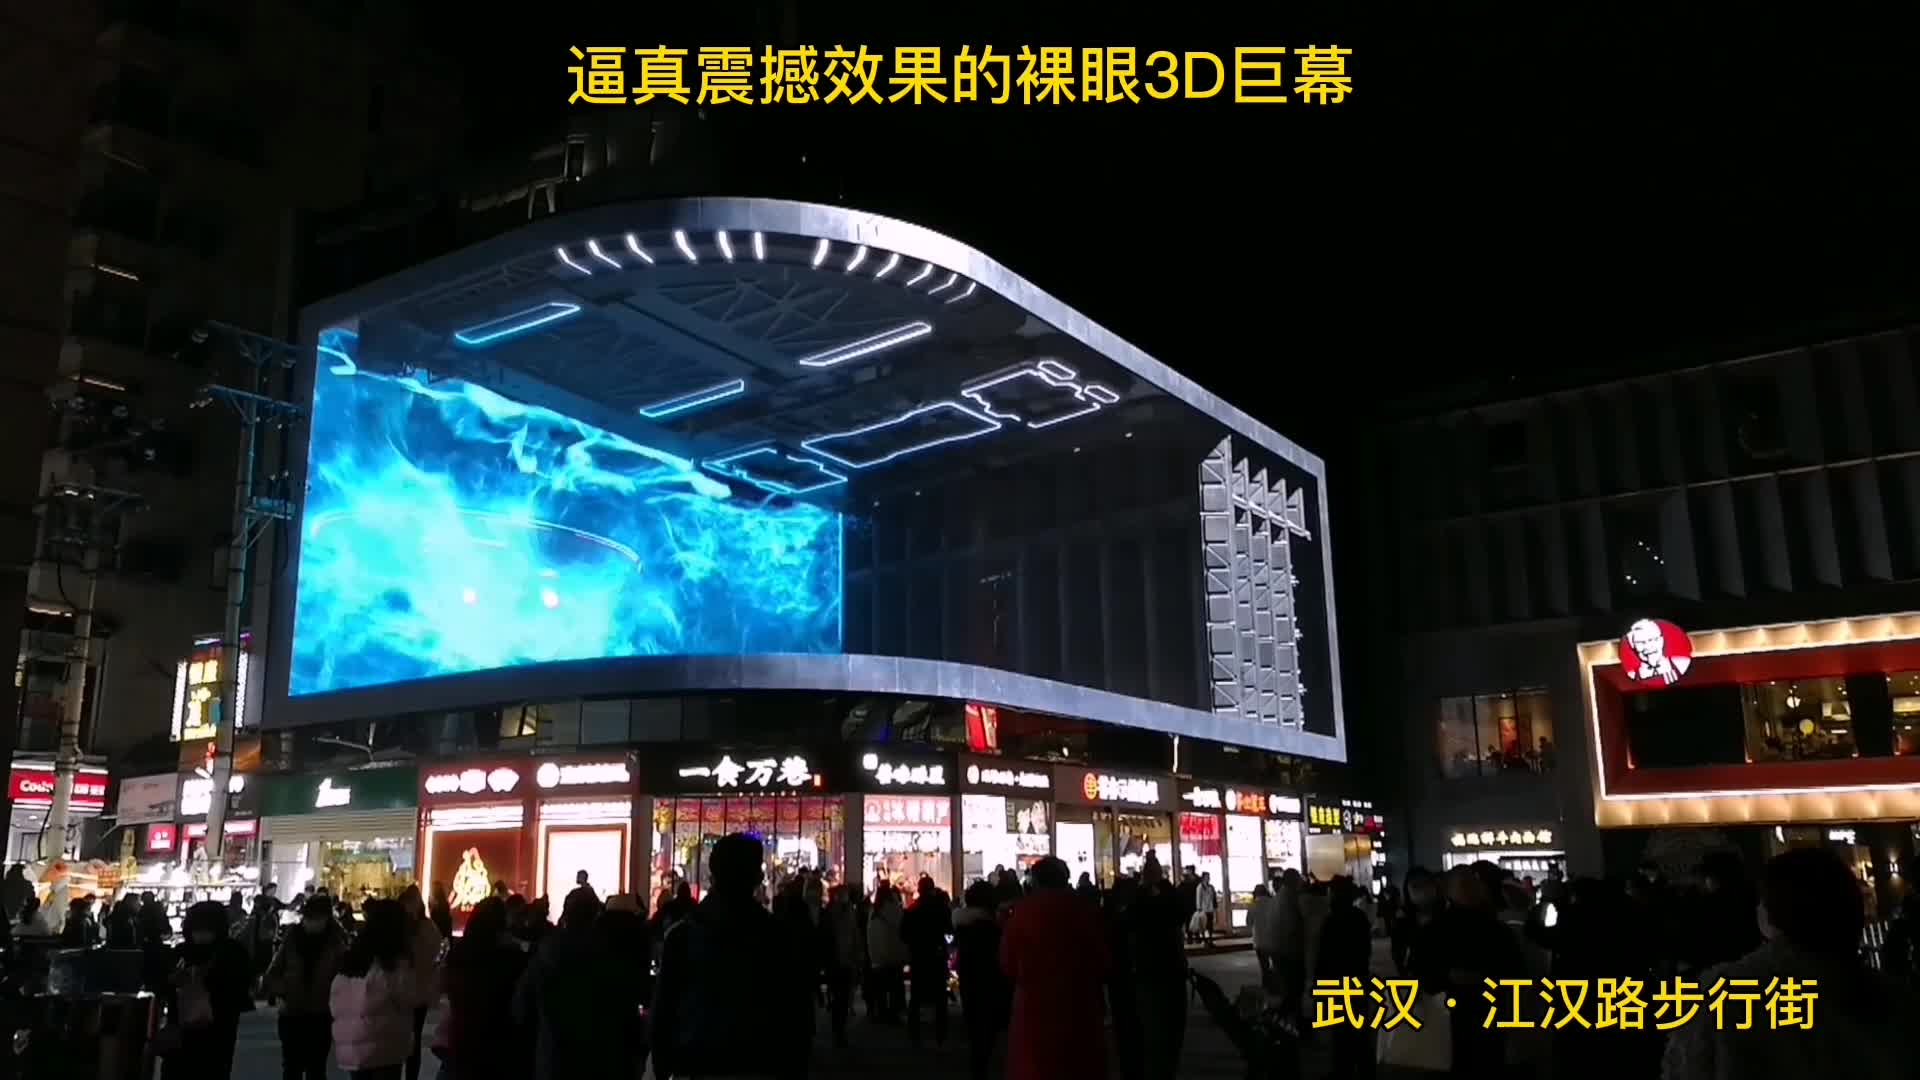 首页  城事  逼真震撼的3d视觉效果的"裸眼3d巨幕"亮相武汉江汉路